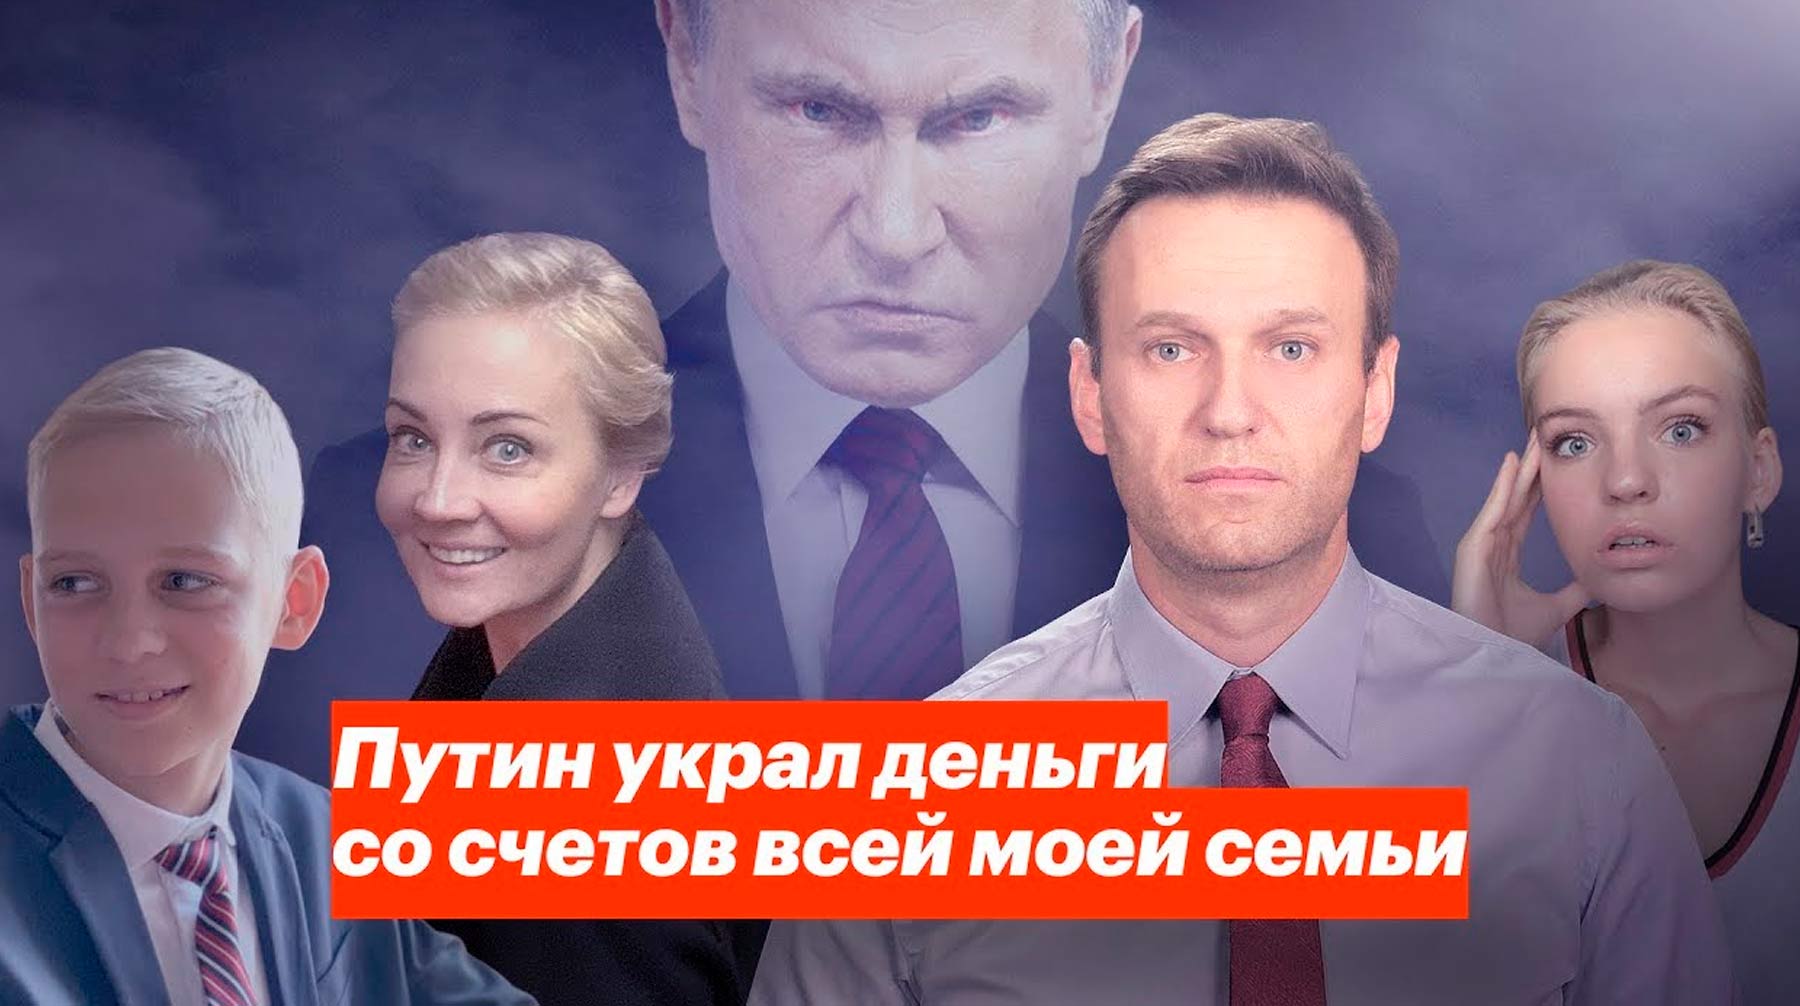 На счетах оппозиционера и его близких указана задолженность в 75 миллионов рублей Фото: © YouTube / Алексей Навальный